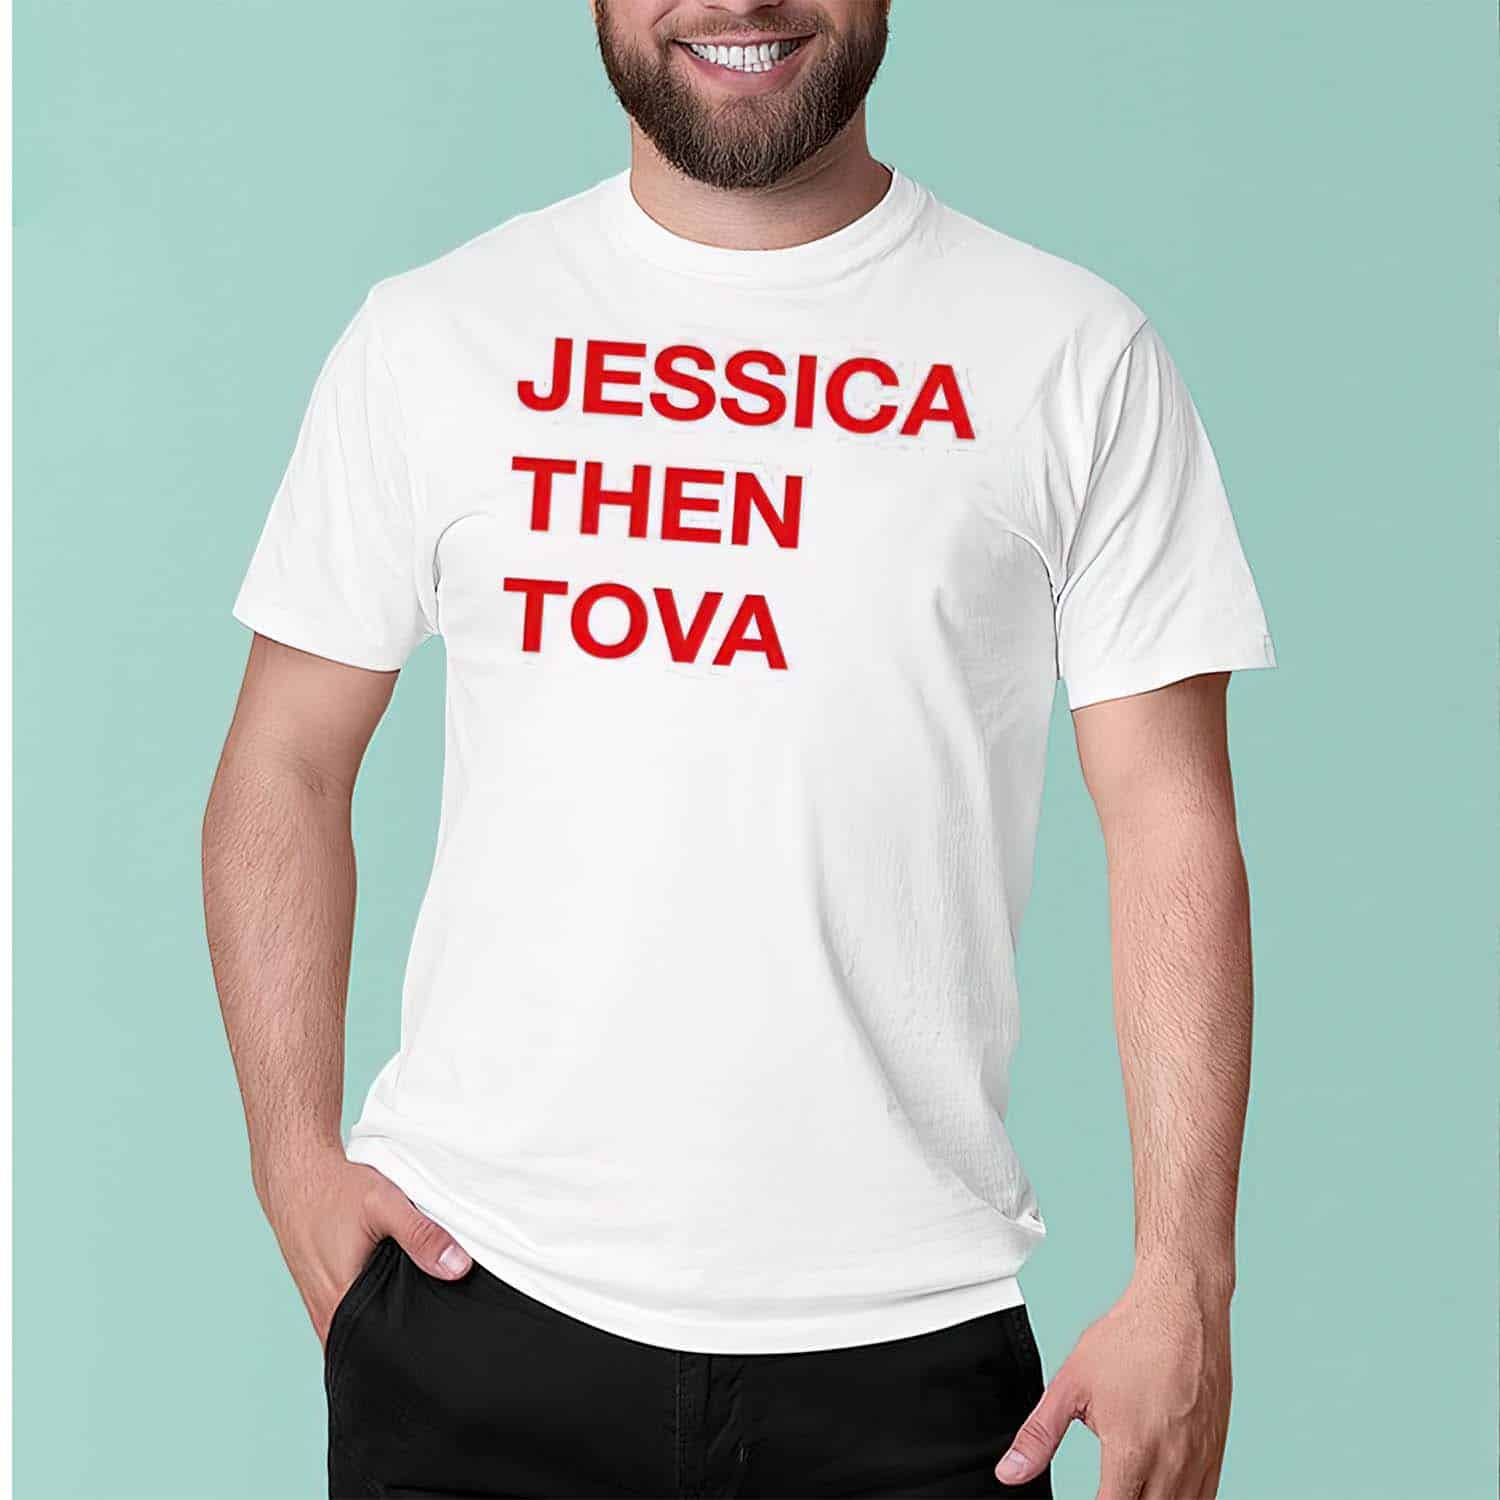 Jessica Then Tova Shirt